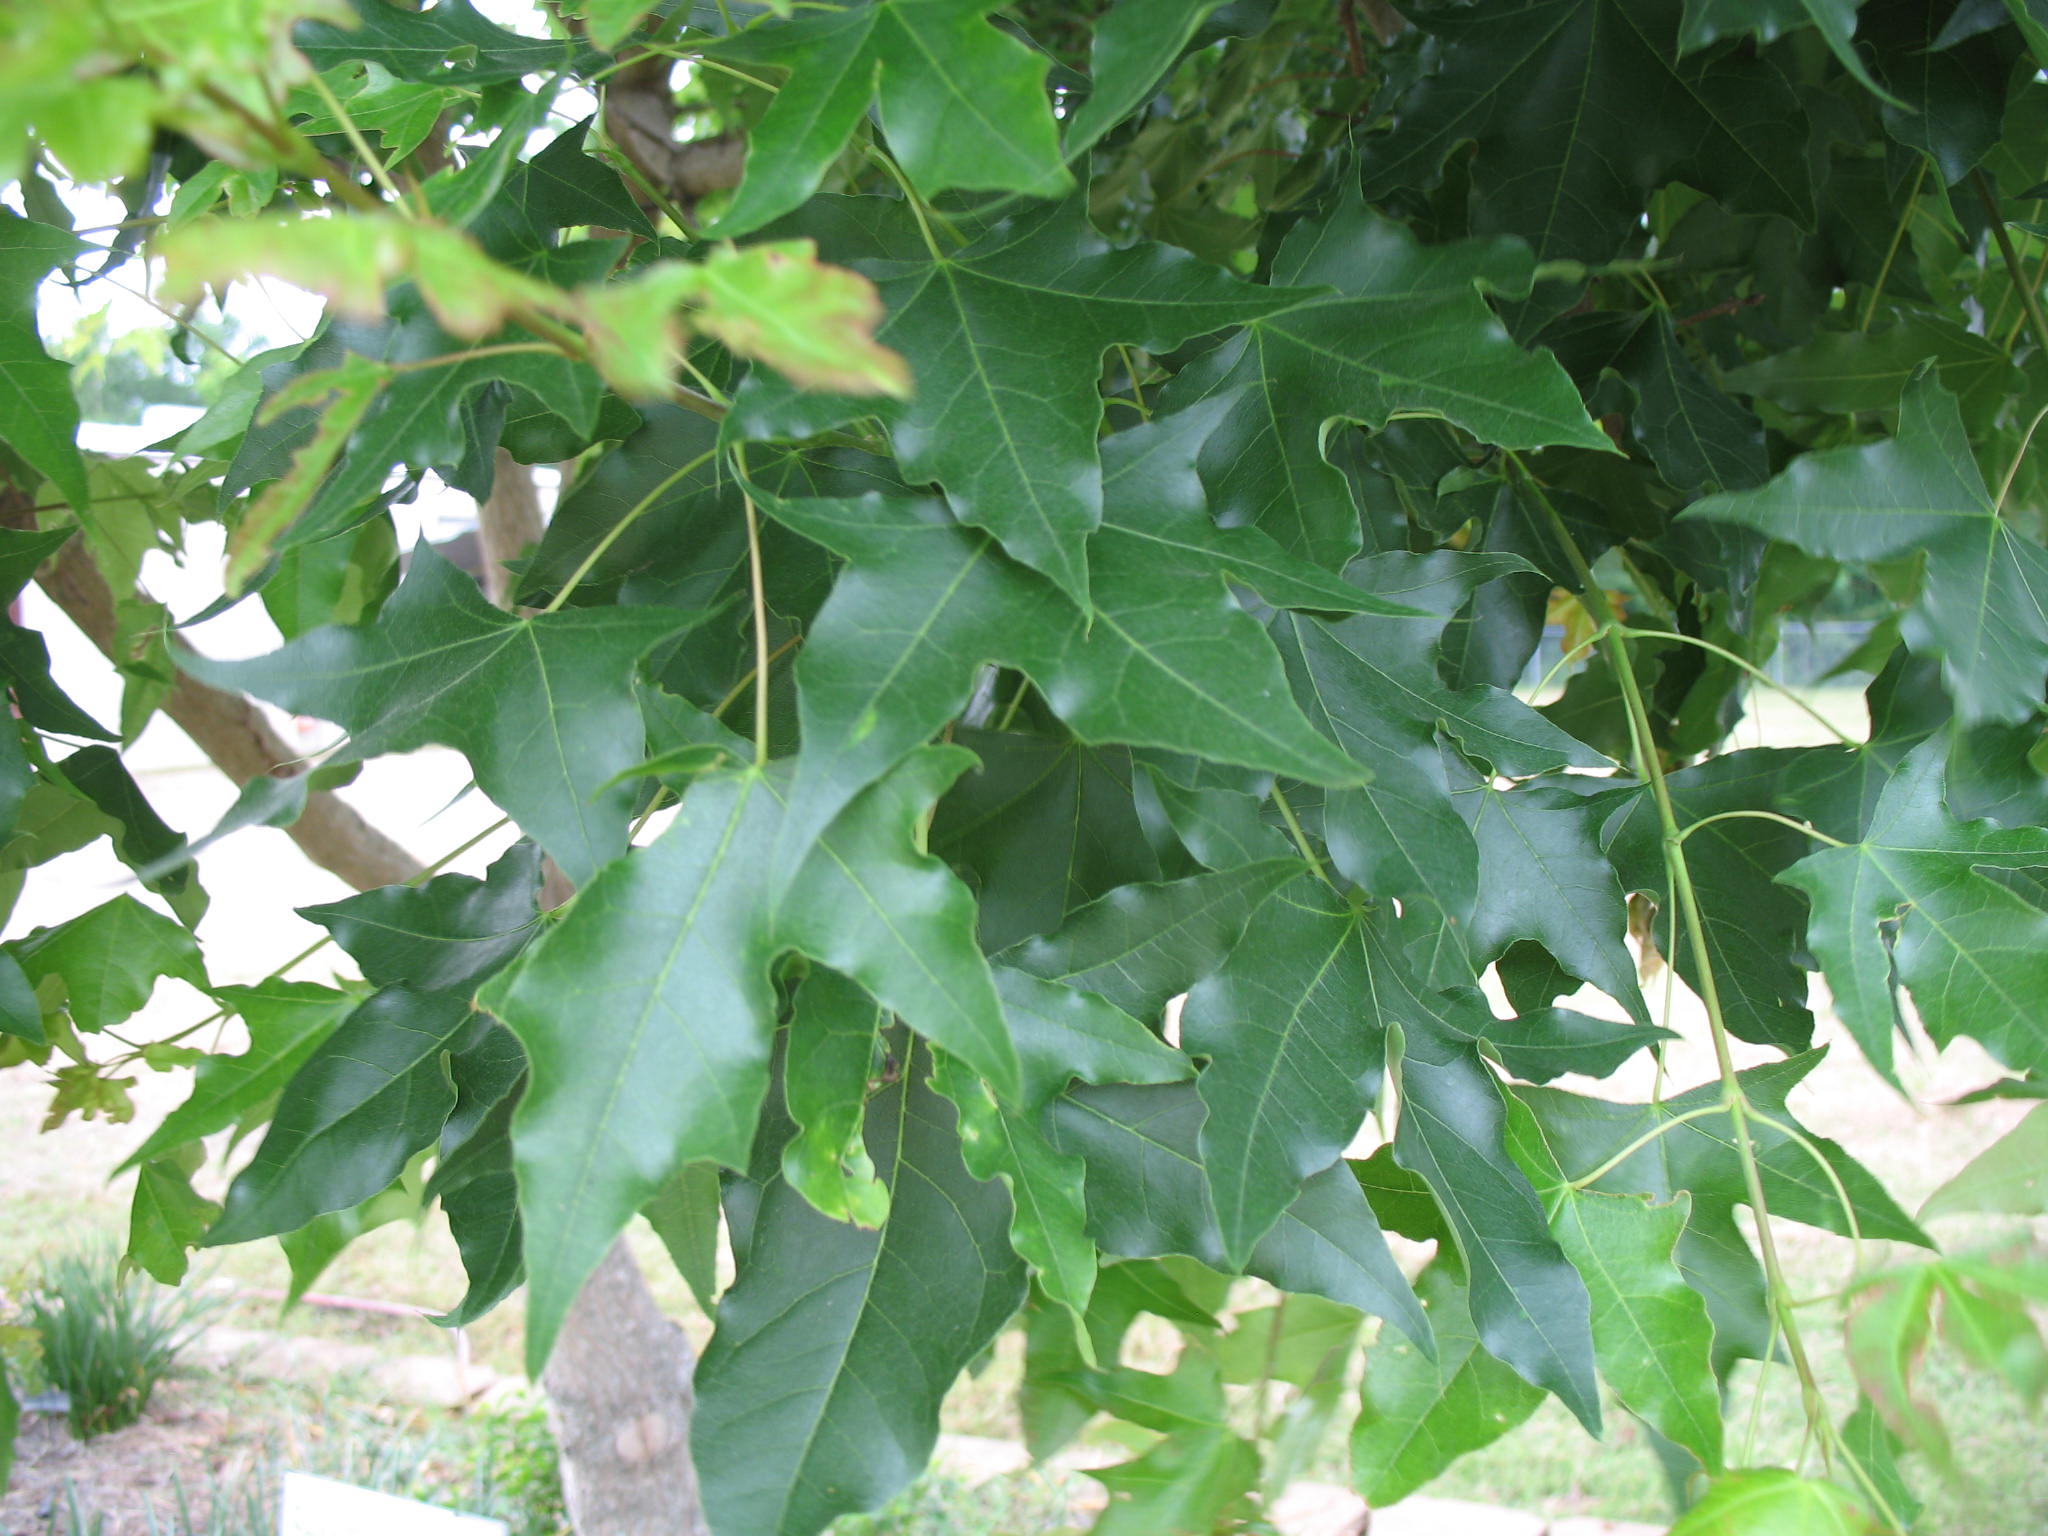 Acer truncatum / Shantung Maple (Purpleblow Maple)